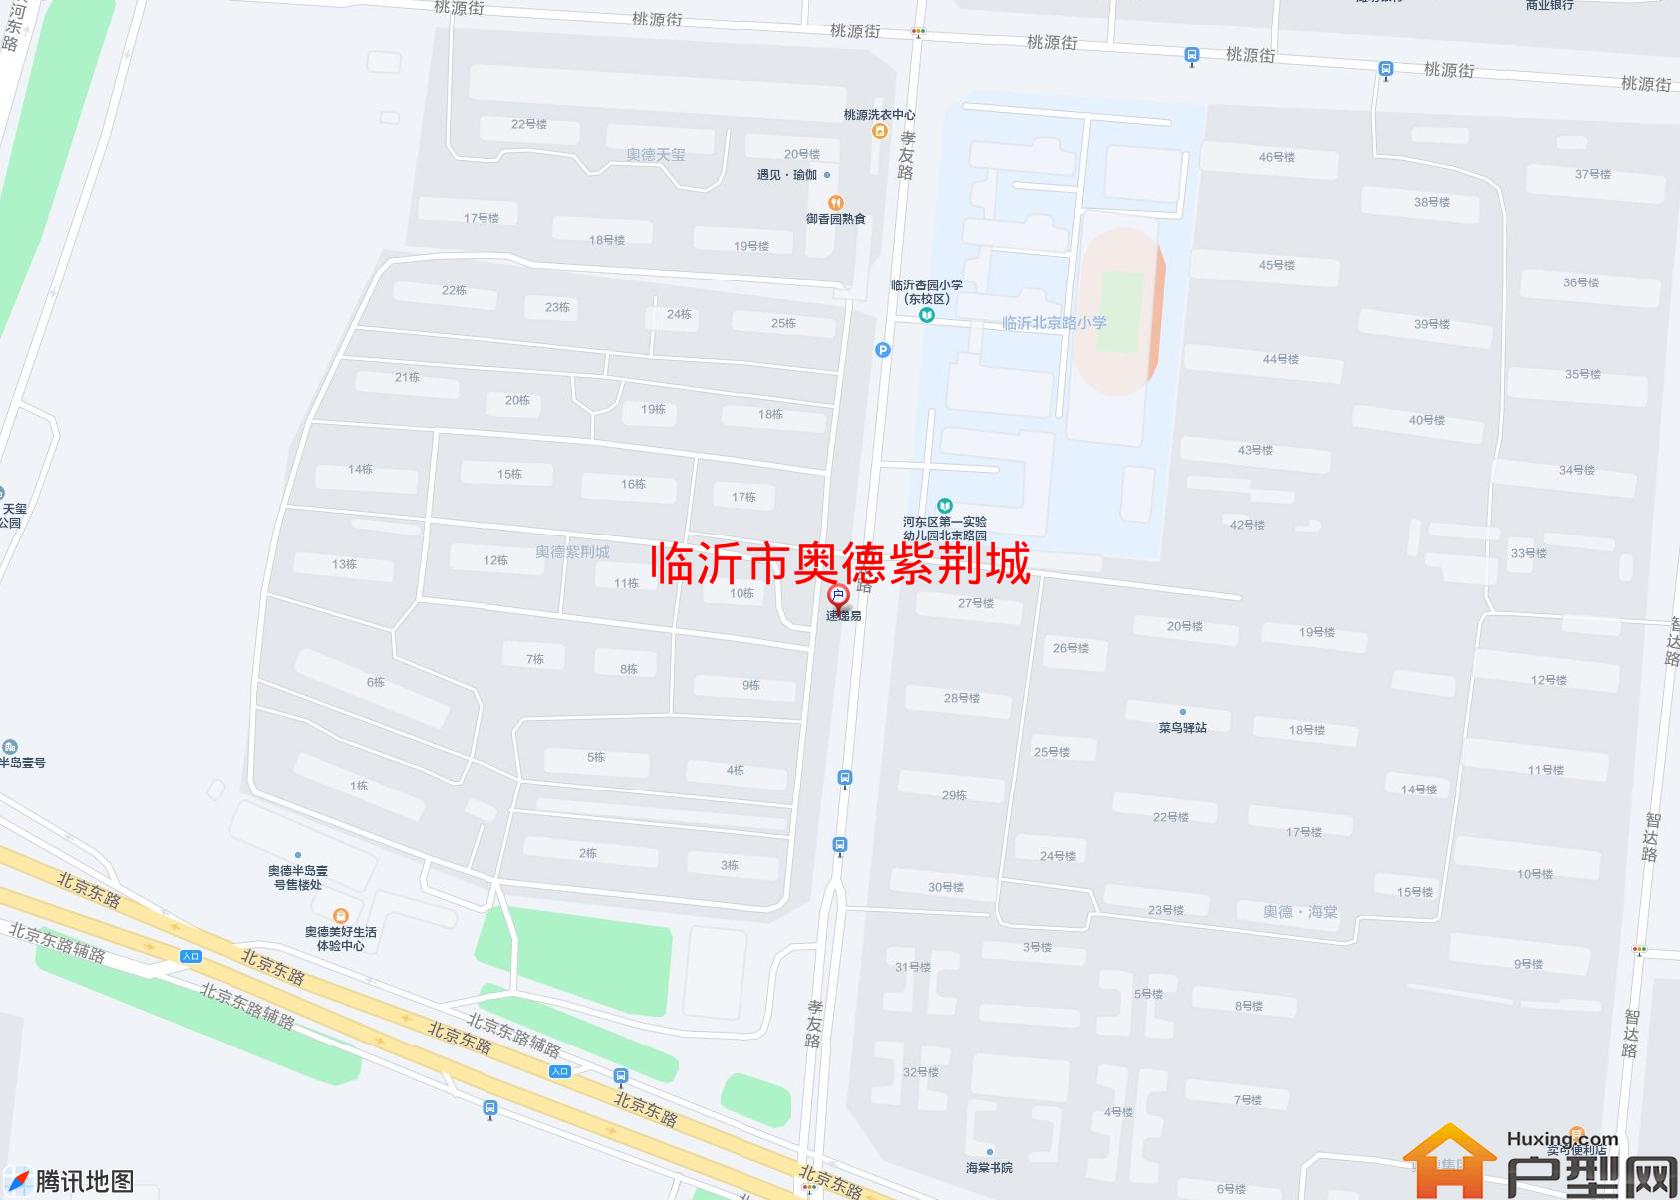 奥德紫荆城小区 - 户型网